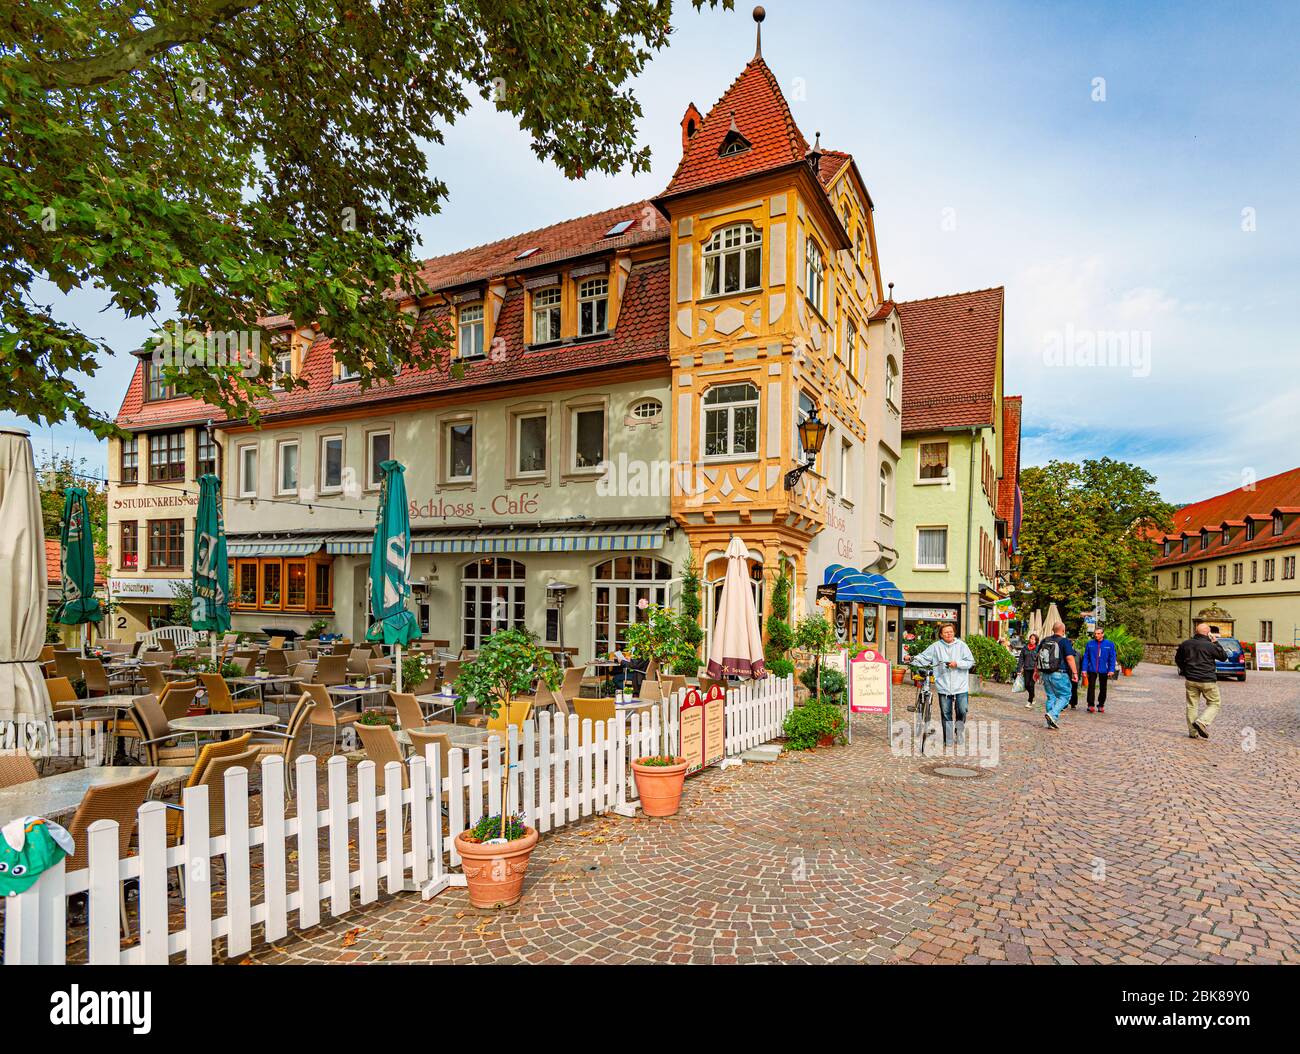 Bad Mergentheim, Allemagne - 24 septembre 2014: Ancienne maison avec café dans la ville allemande Bad Mergentheim, Bavière, Allemagne Banque D'Images